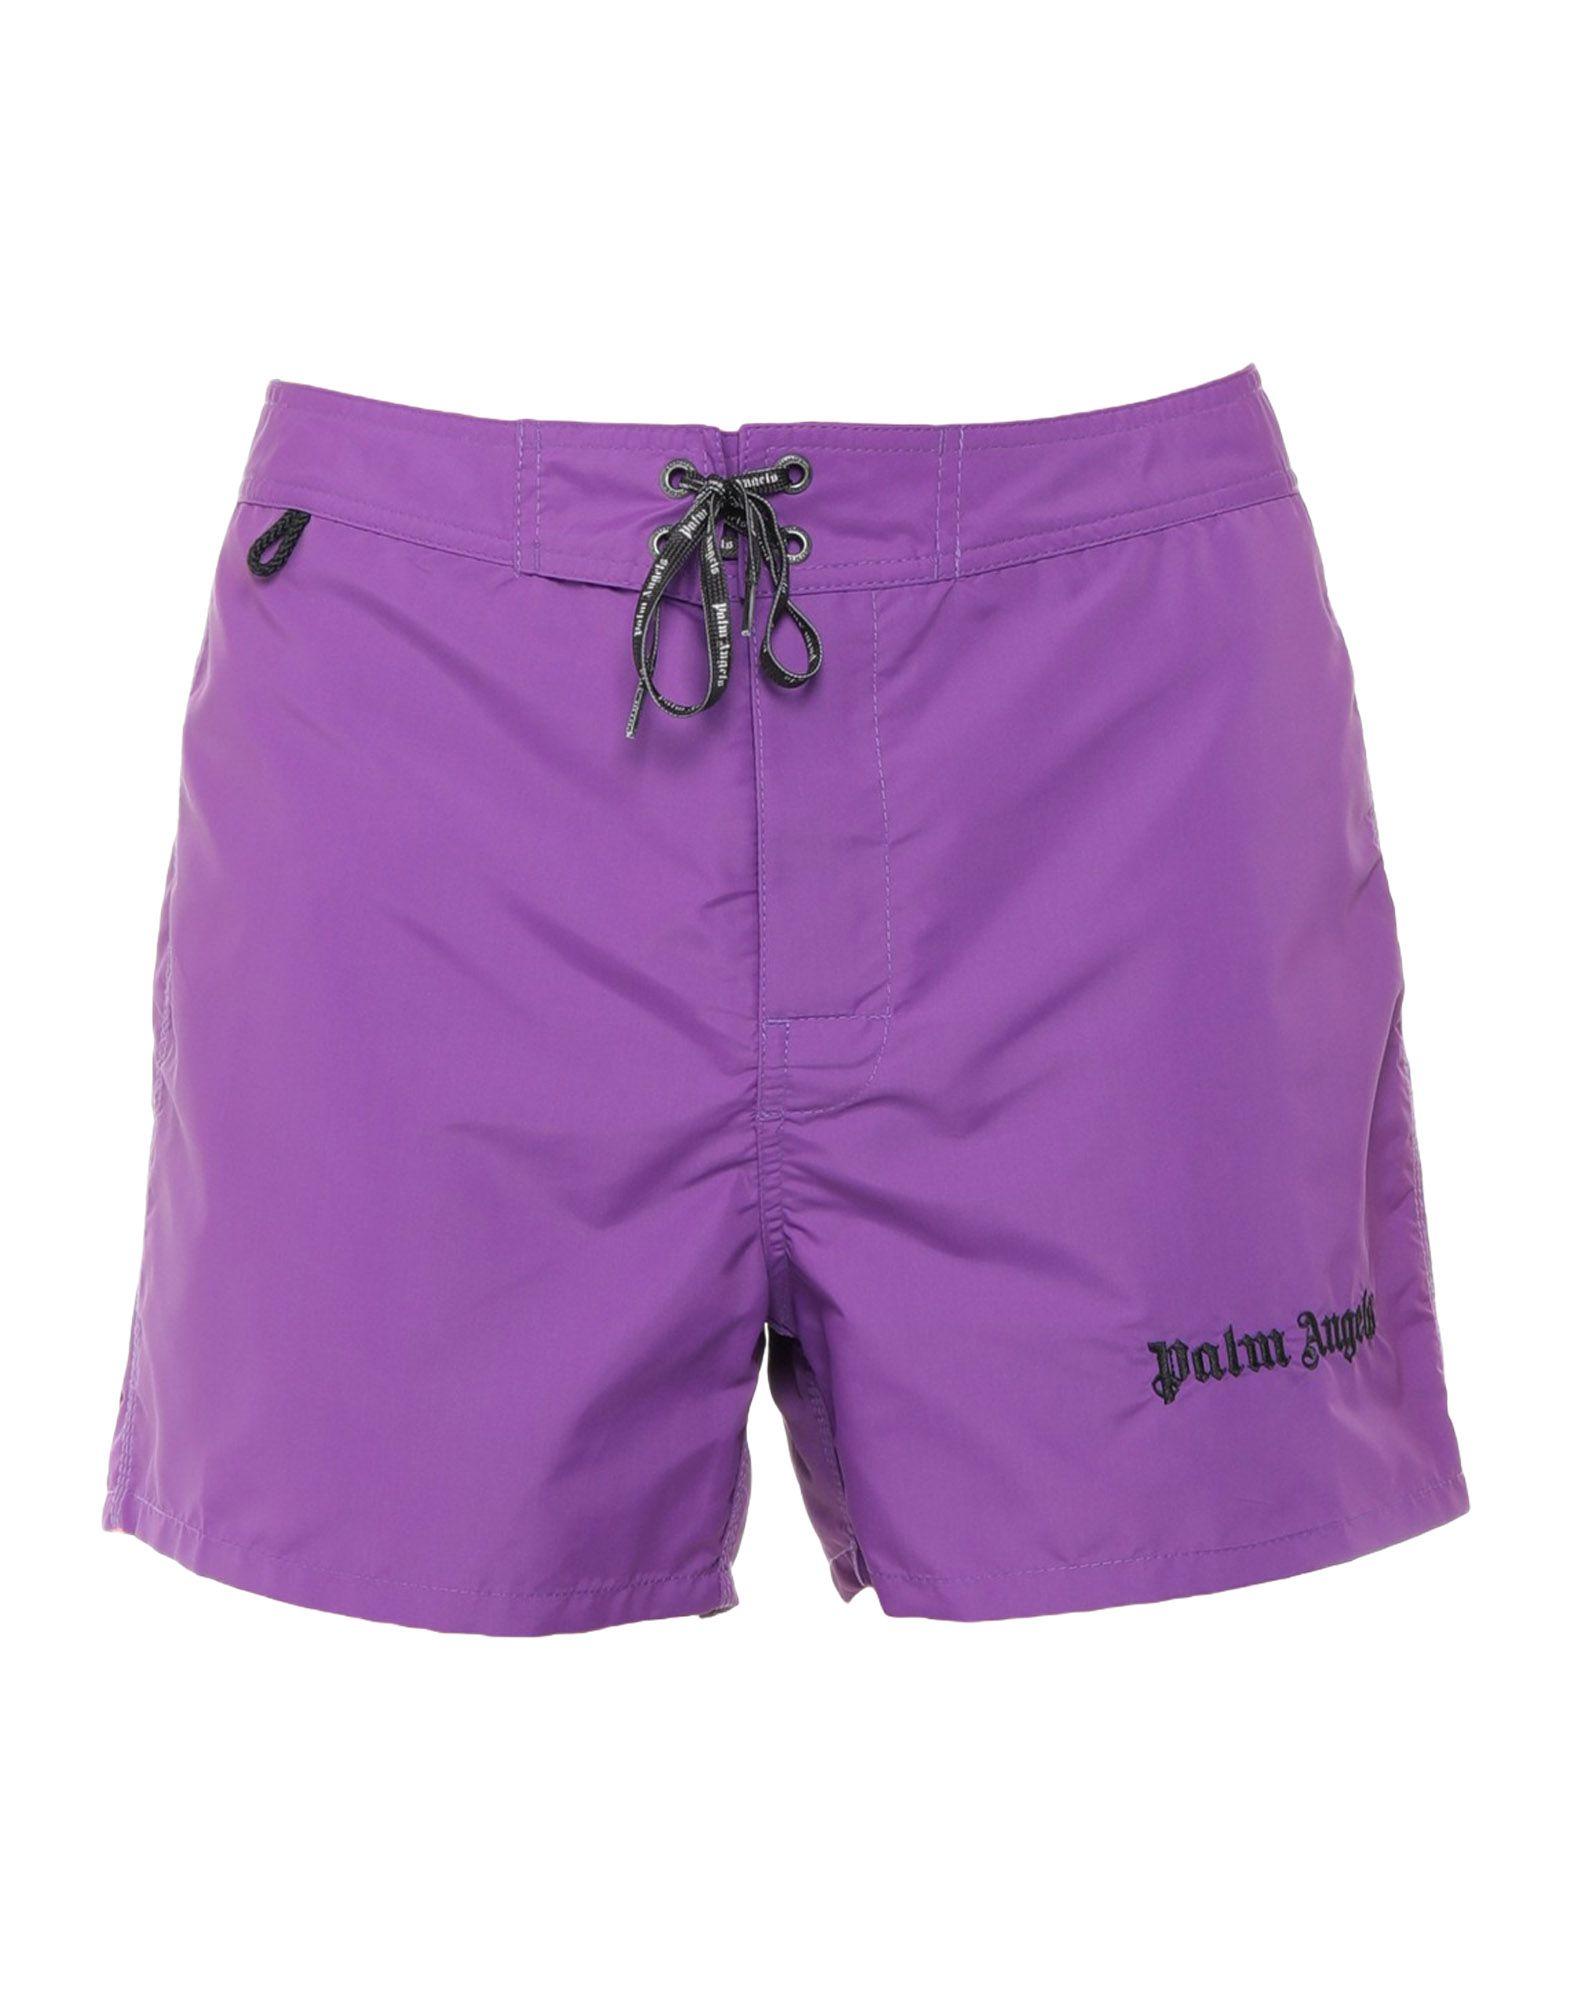 Sundek Synthetic Swim Trunks in Purple for Men - Lyst